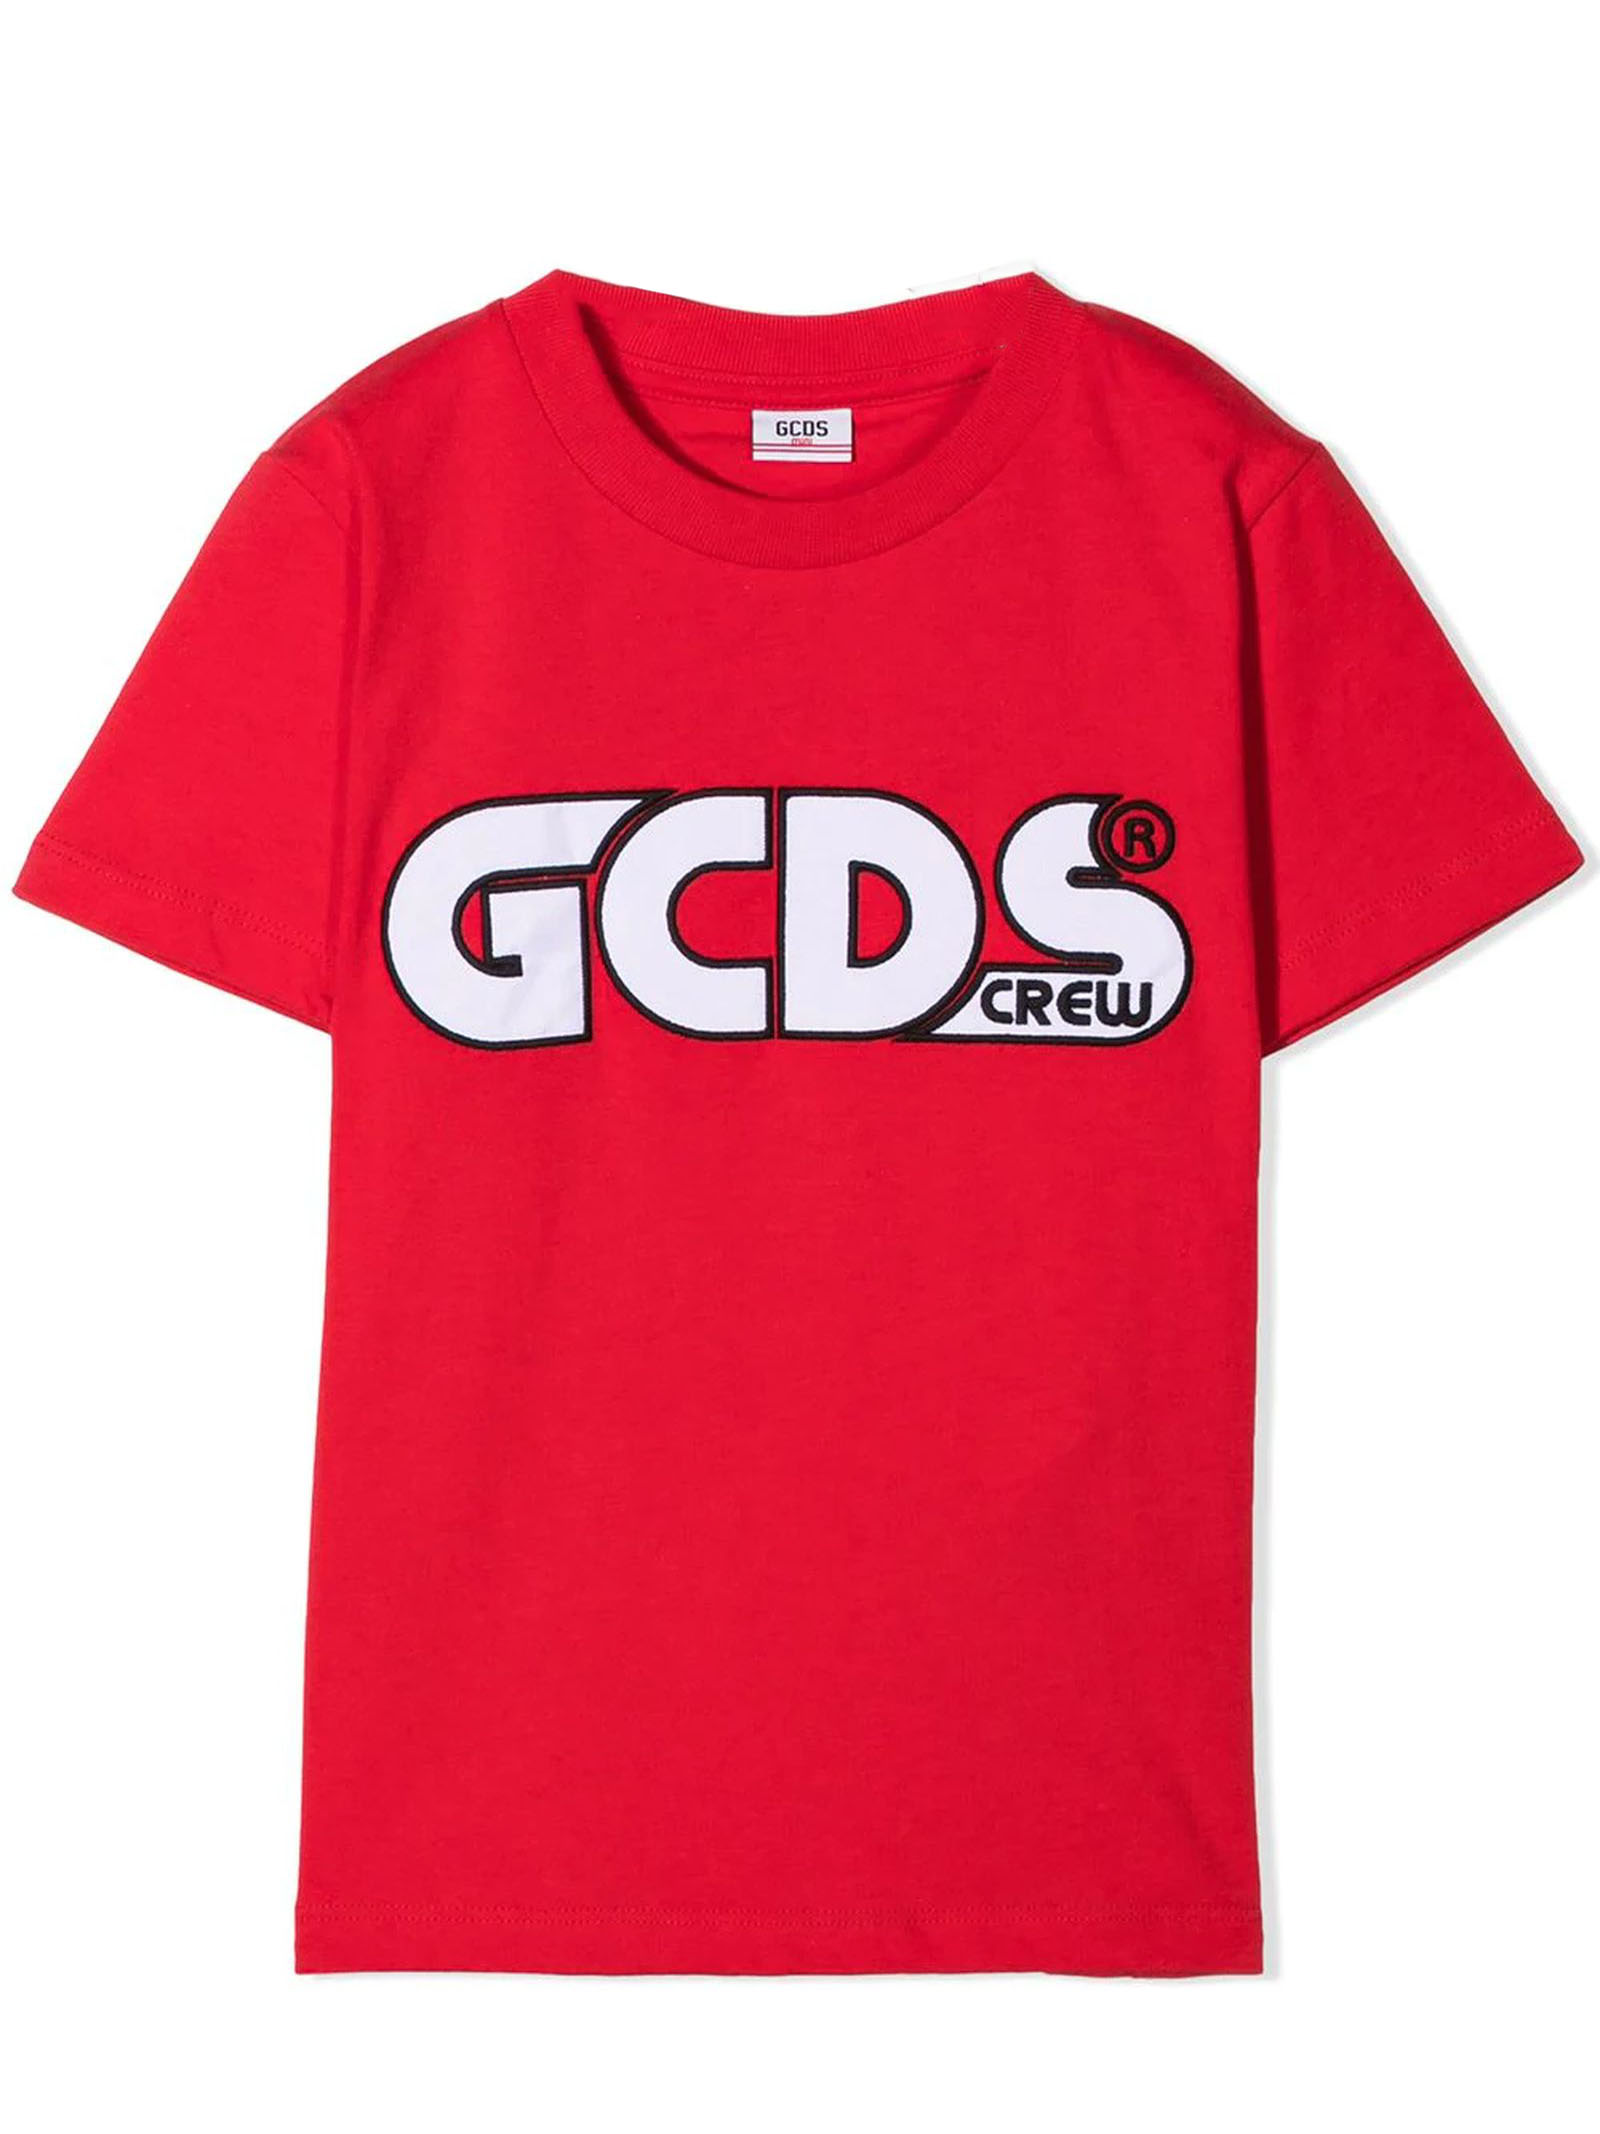 GCDS RED COTTON T-SHIRT,027591K 040